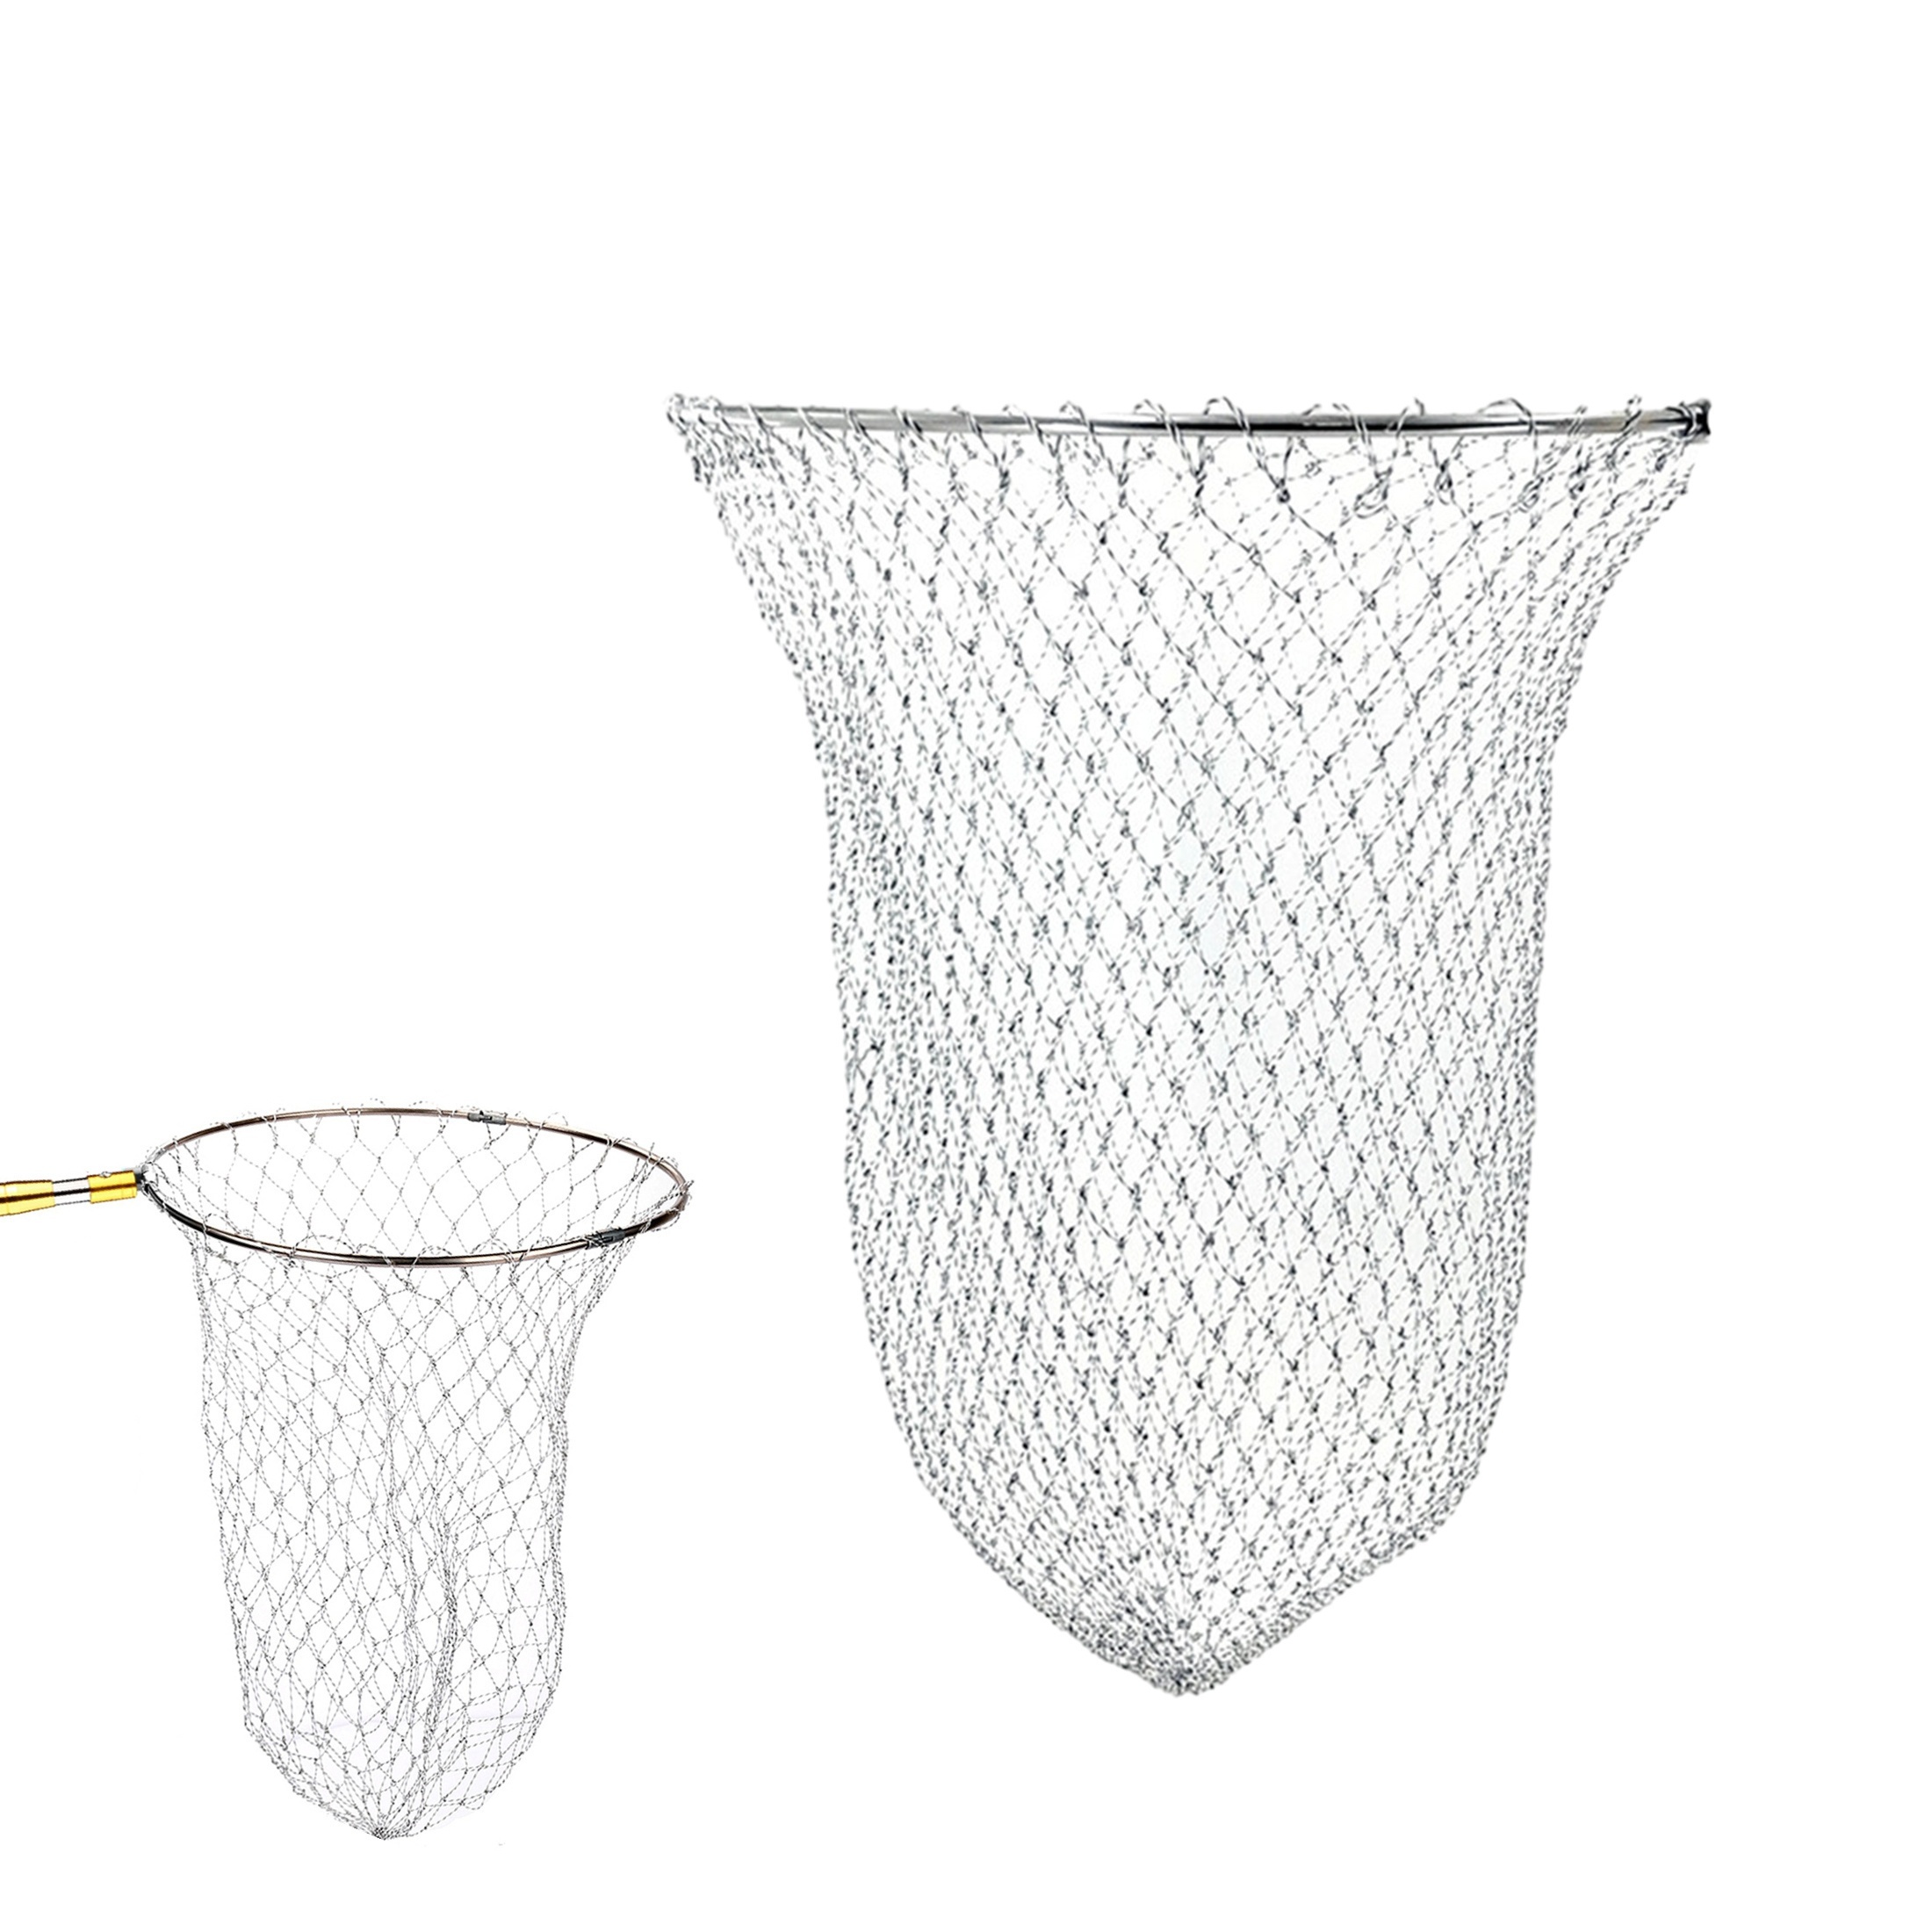 FunVZU 1pc Throw Fishing Cast Net For Bait Fishing, Sinker Fish Net, Radius  Size 4FT/5FT/6FT/7FT/8FT (121.92cm/152.4cm/182.88cm/213.36cm/243.84cm)